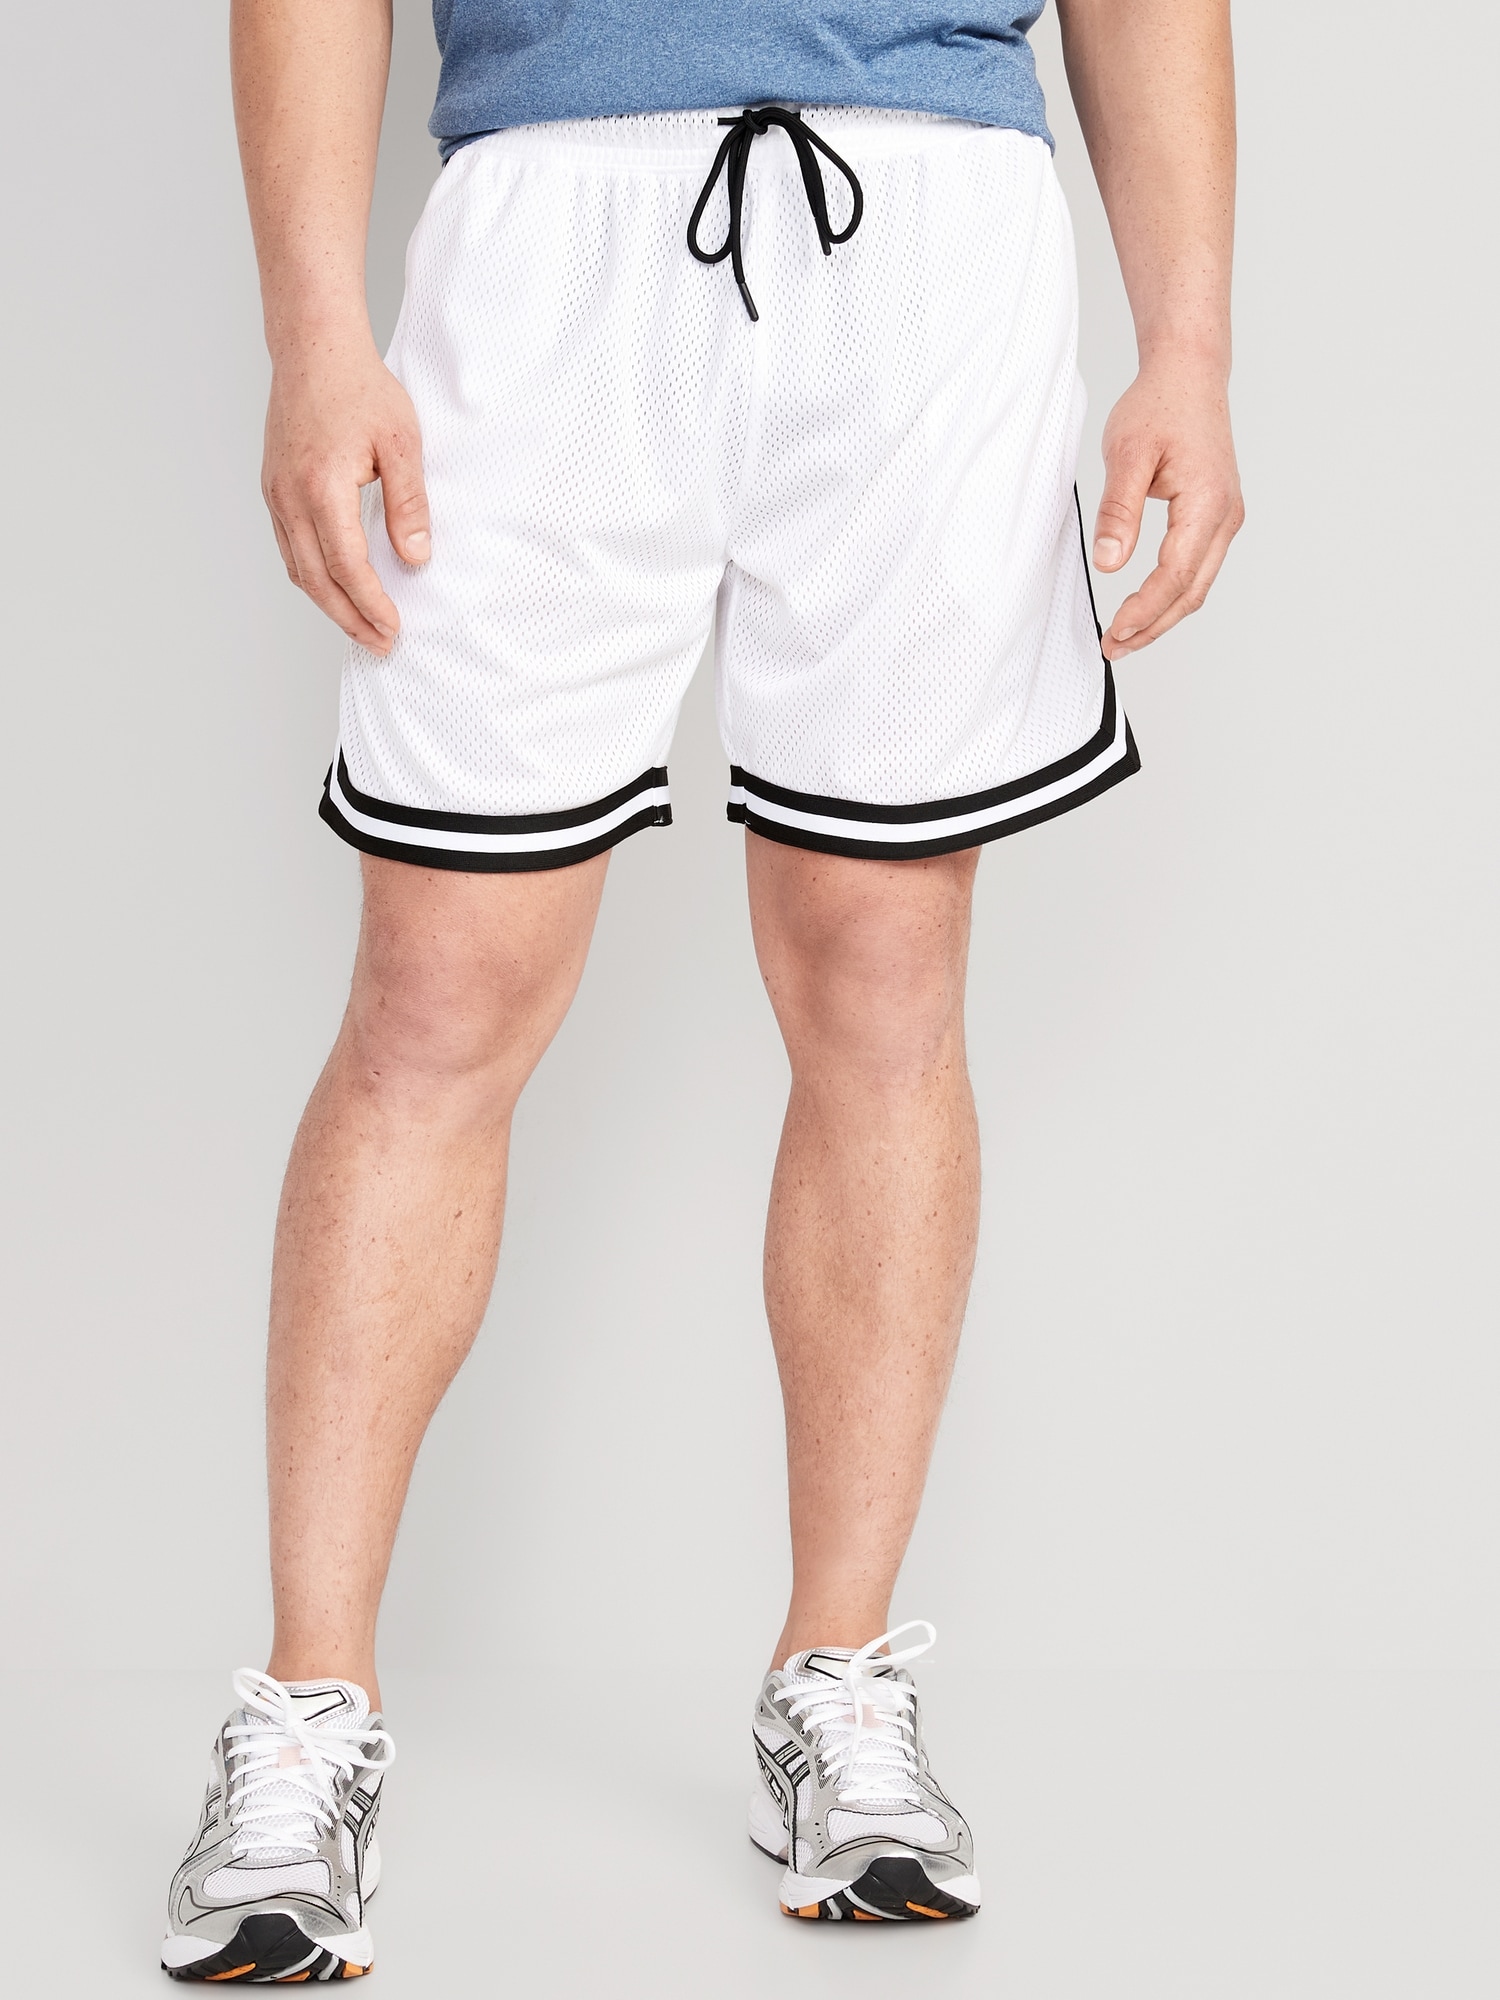 Basketball Shorts: Short Shorts vs. Long Shorts